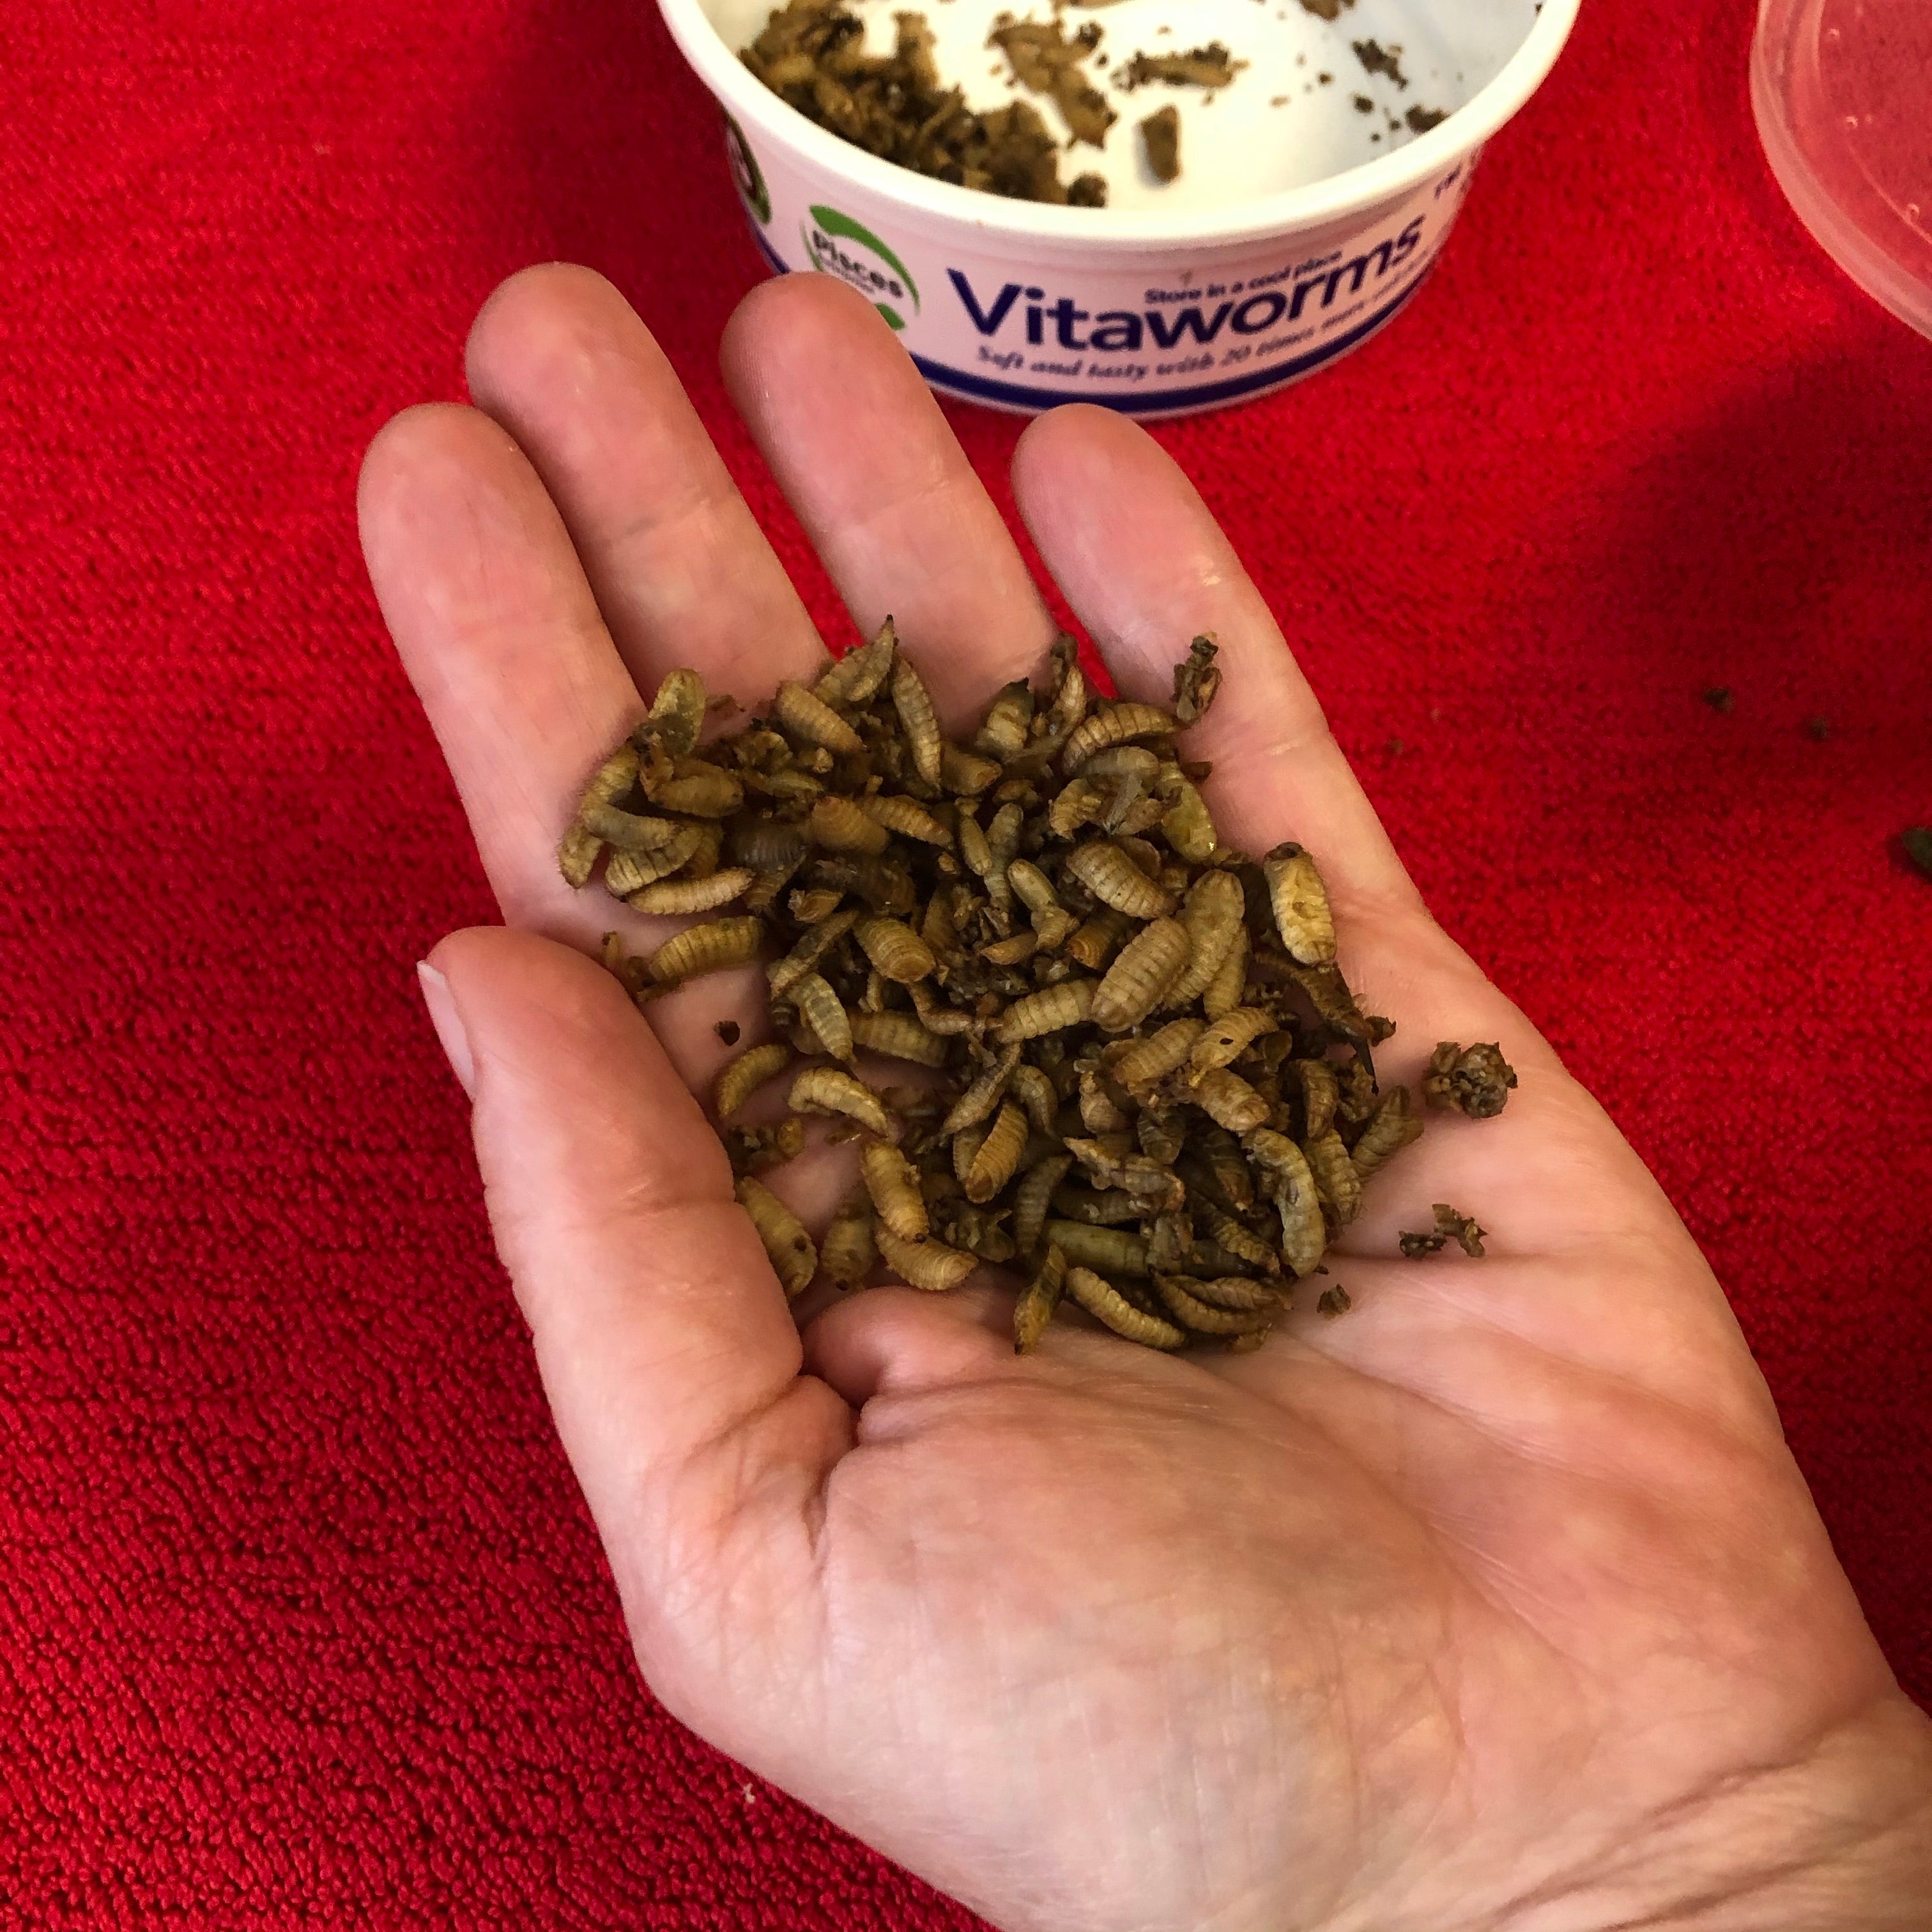 Vitaworms - Black Soldier Fly Larvae (BSFL)